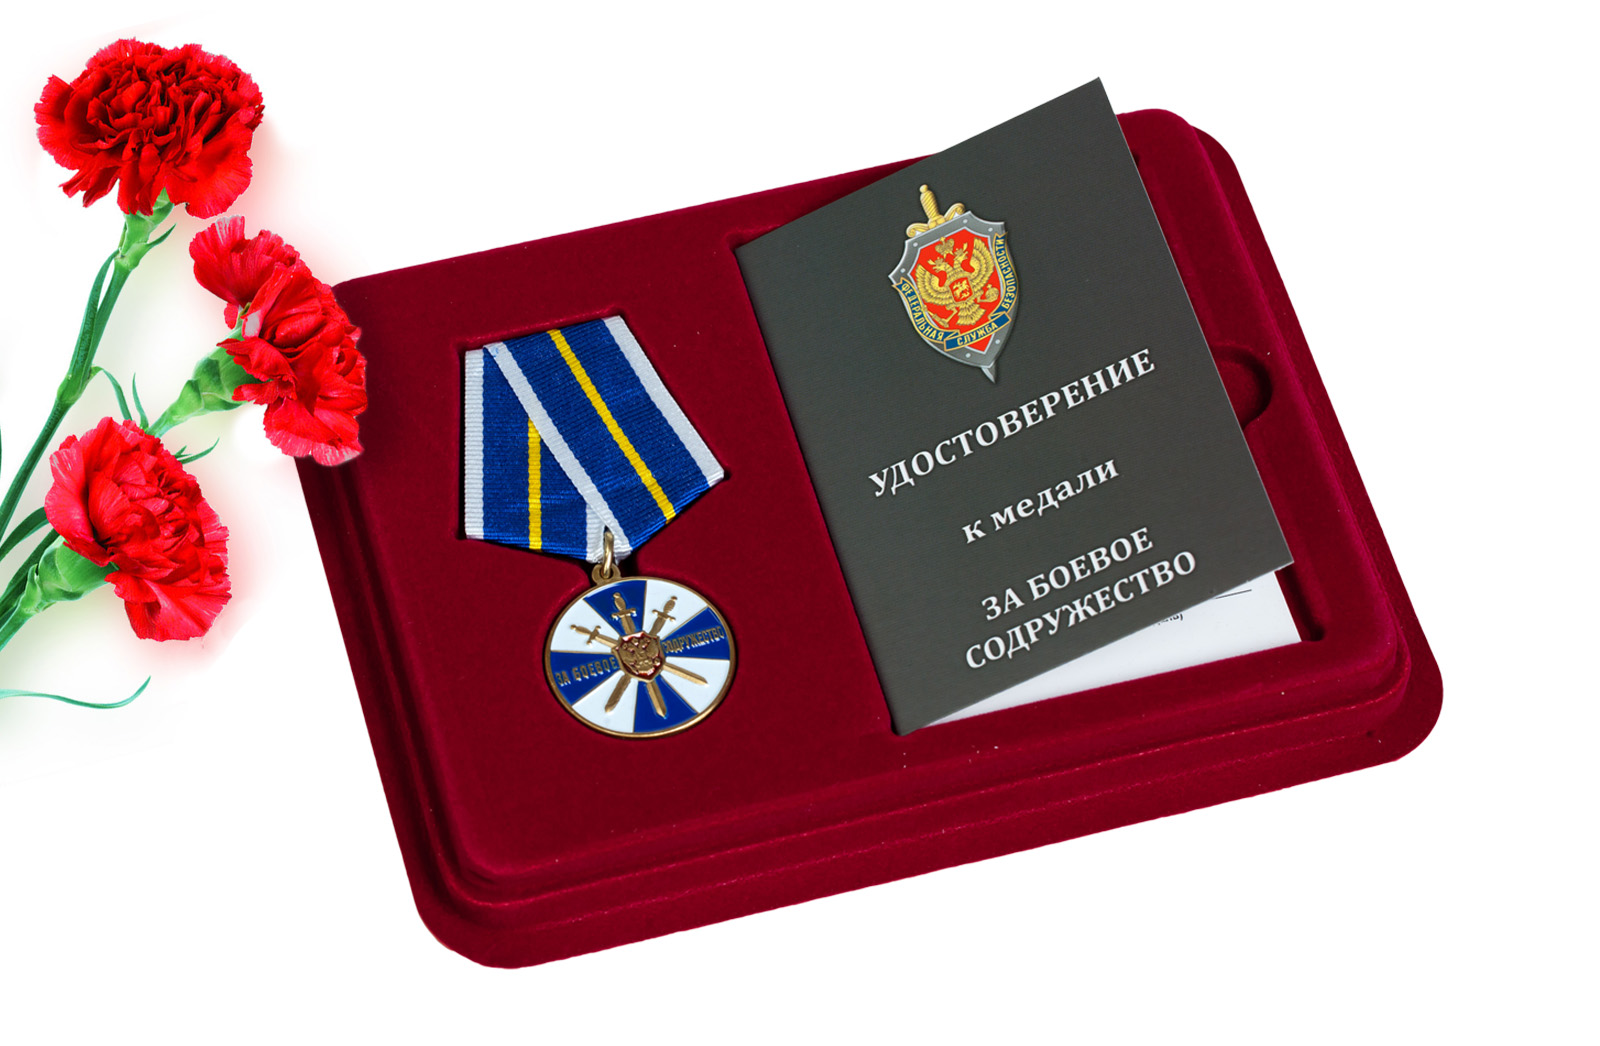 Купить медаль ФСБ России За боевое содружество в подарок мужчине